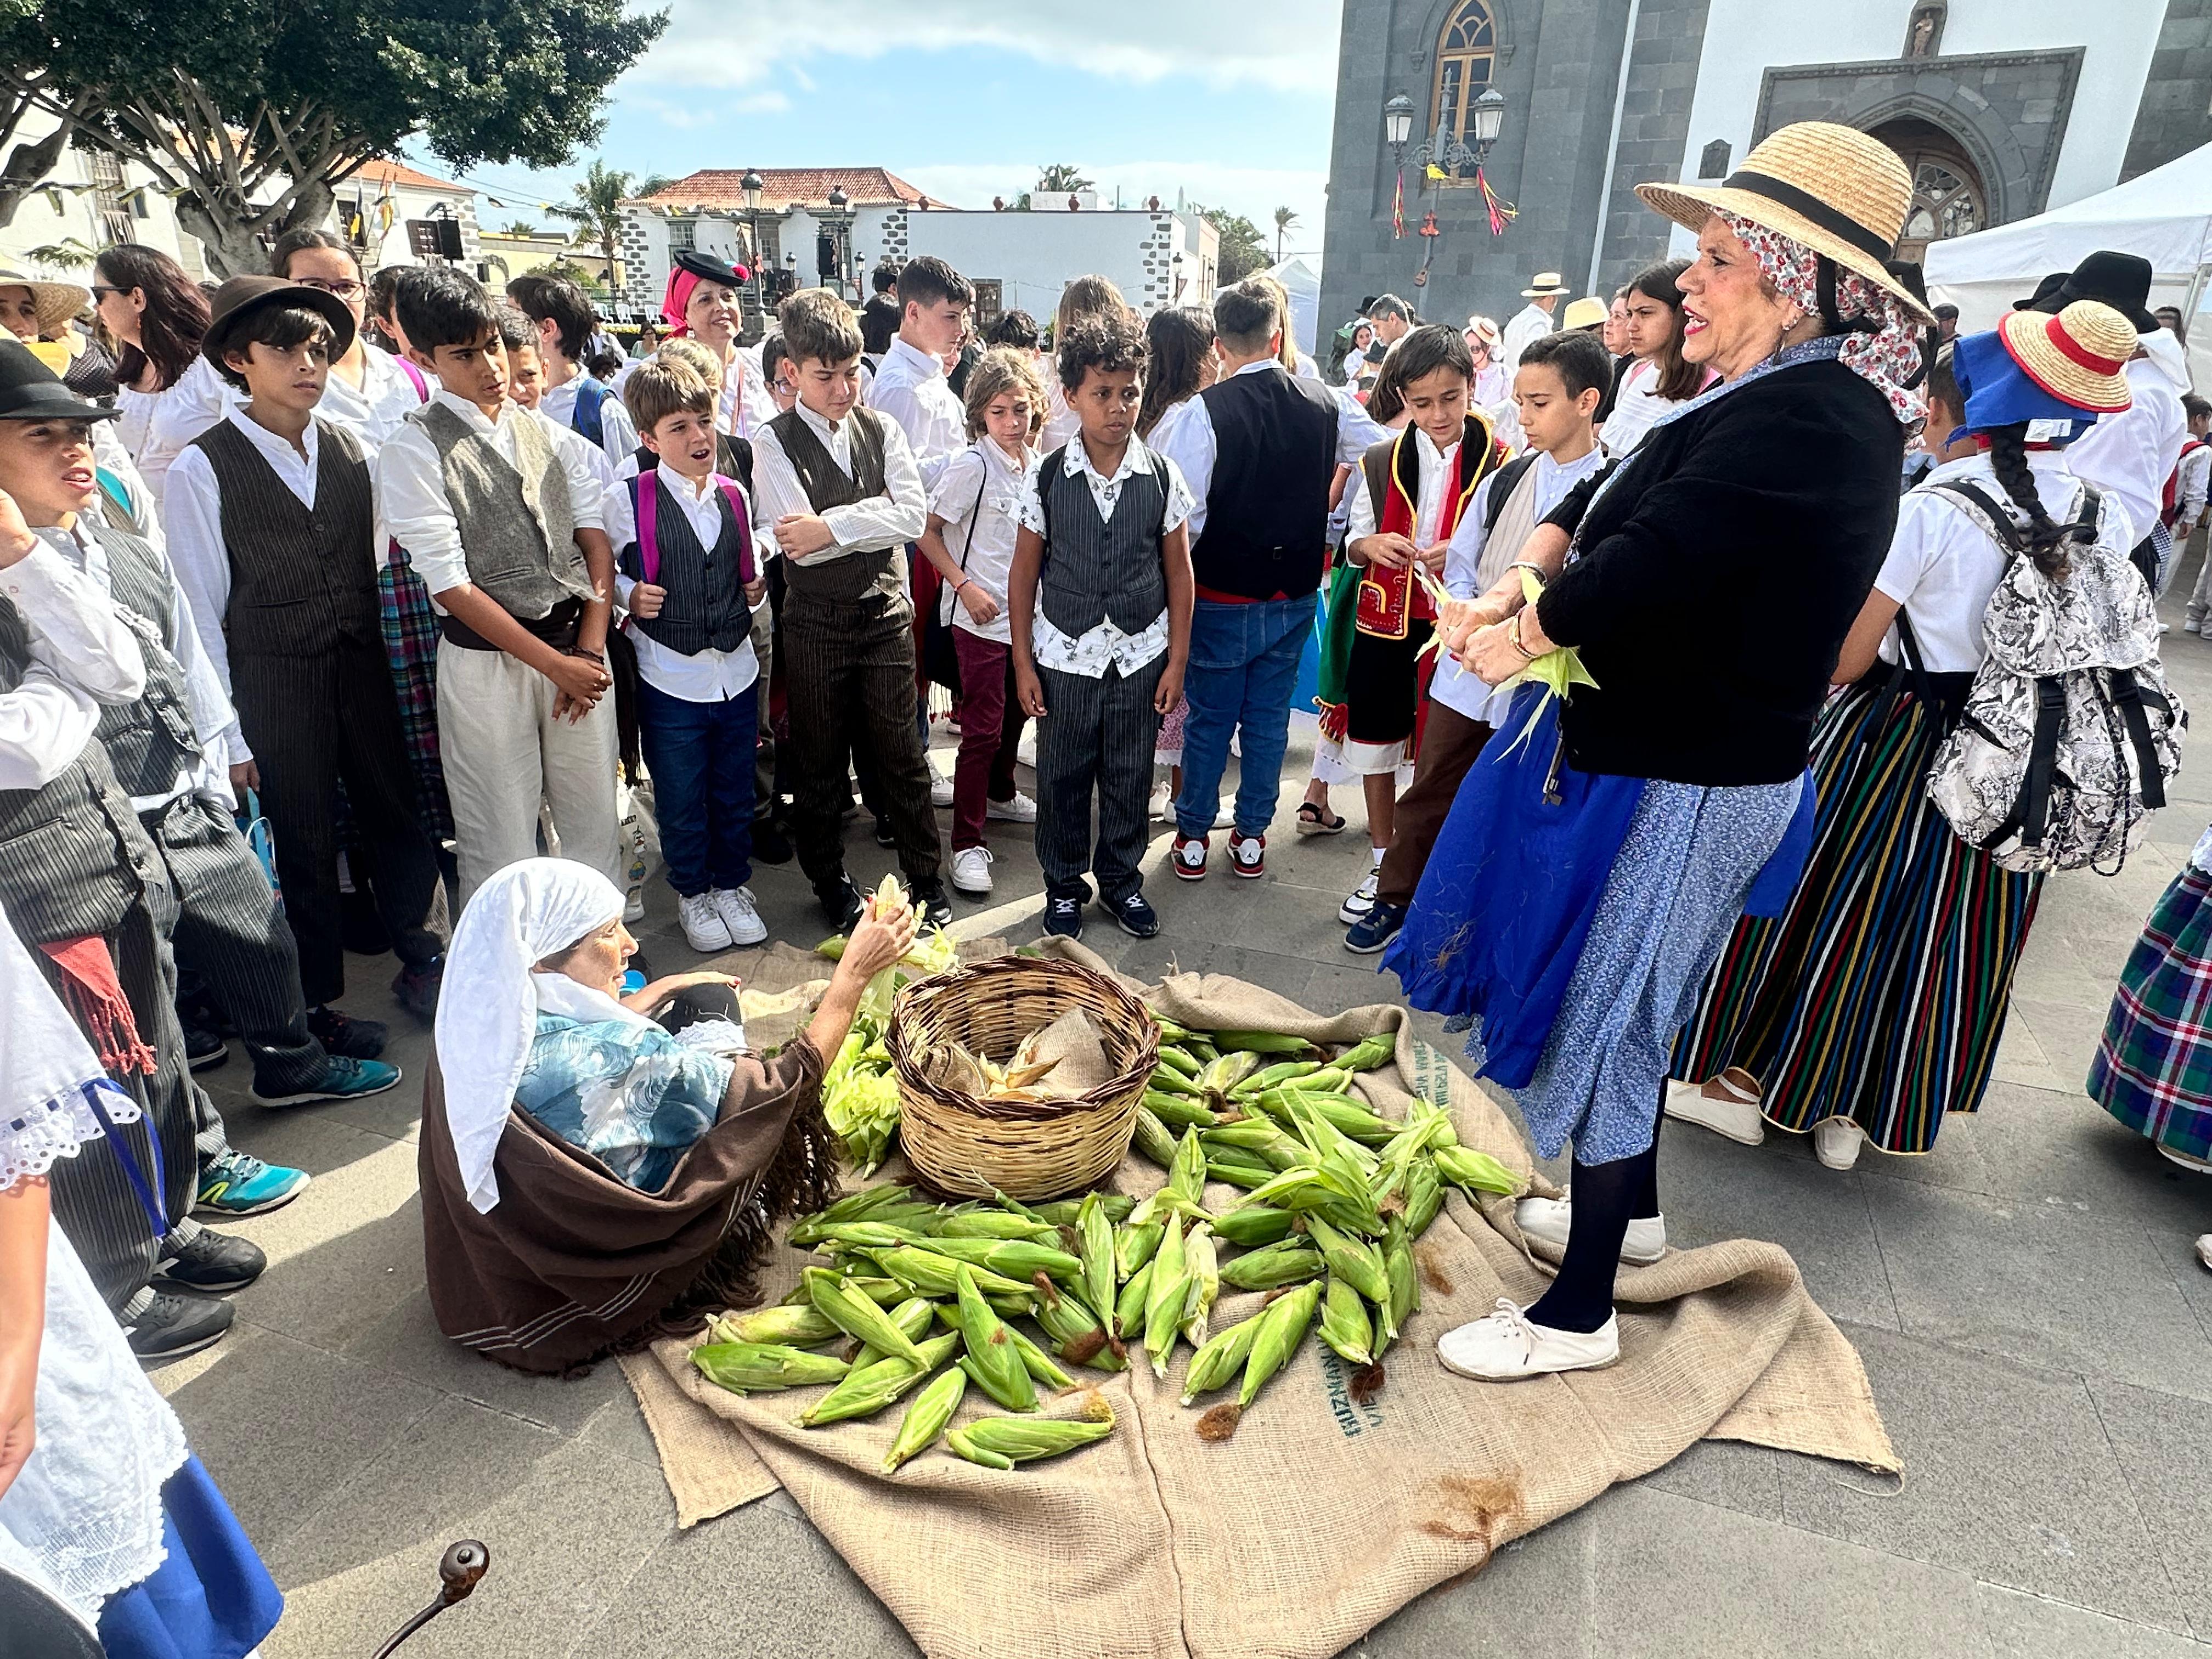 Fiesta de las tradiciones en Telde